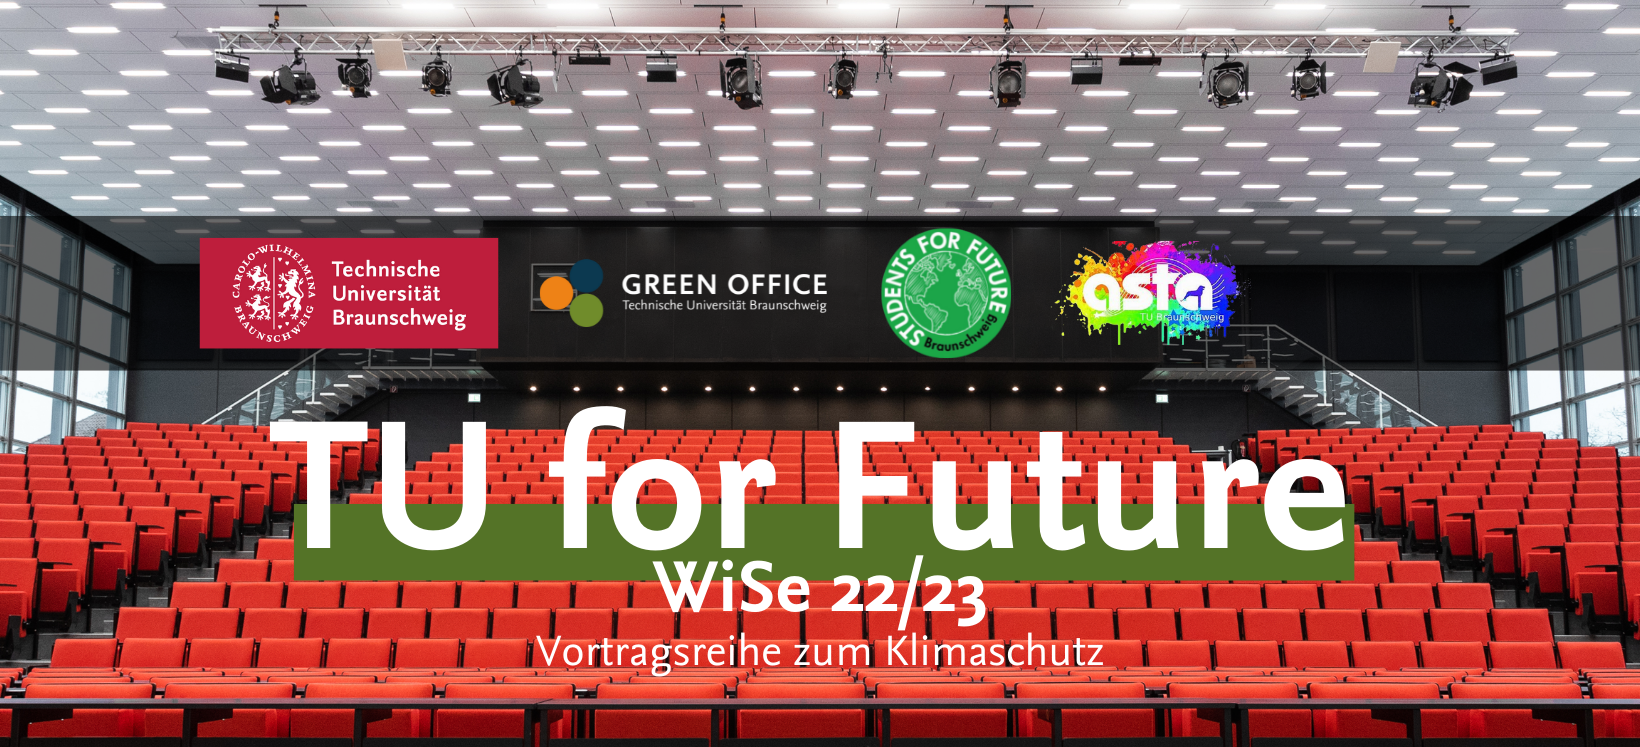 Es handelt sich um ein Werbungs-Banner der TU for Future Vorlesungsreihe. Zu sehen ist dabei das volle Audimax. Davor steht in großer Schrift "TU for Future". Außerdem sind die Logos von der TU Braunschweig, den Students for Future, dem Green Office und dem AStA dort zu sehen.